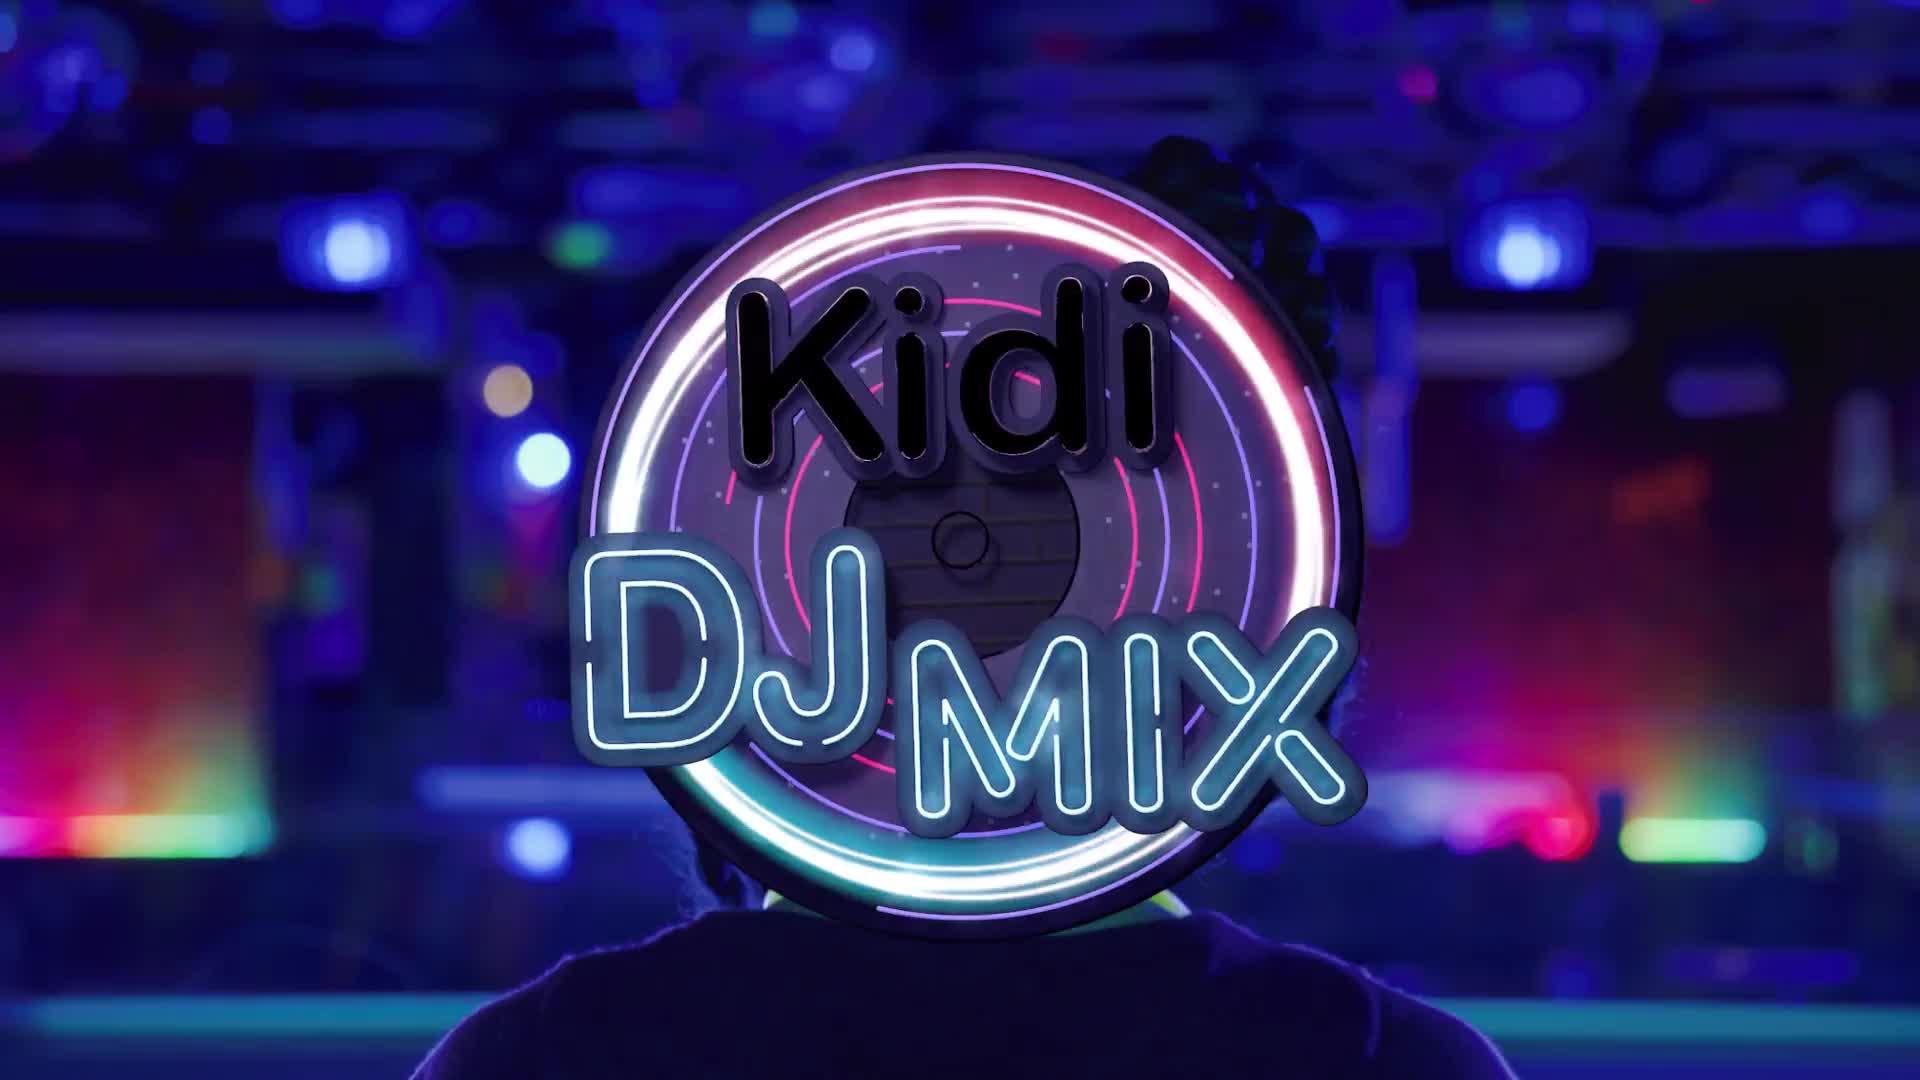 Vtech Kidi Super Star DJ / Vtech Kidi DJ Mix £40 - Free Click & Collect